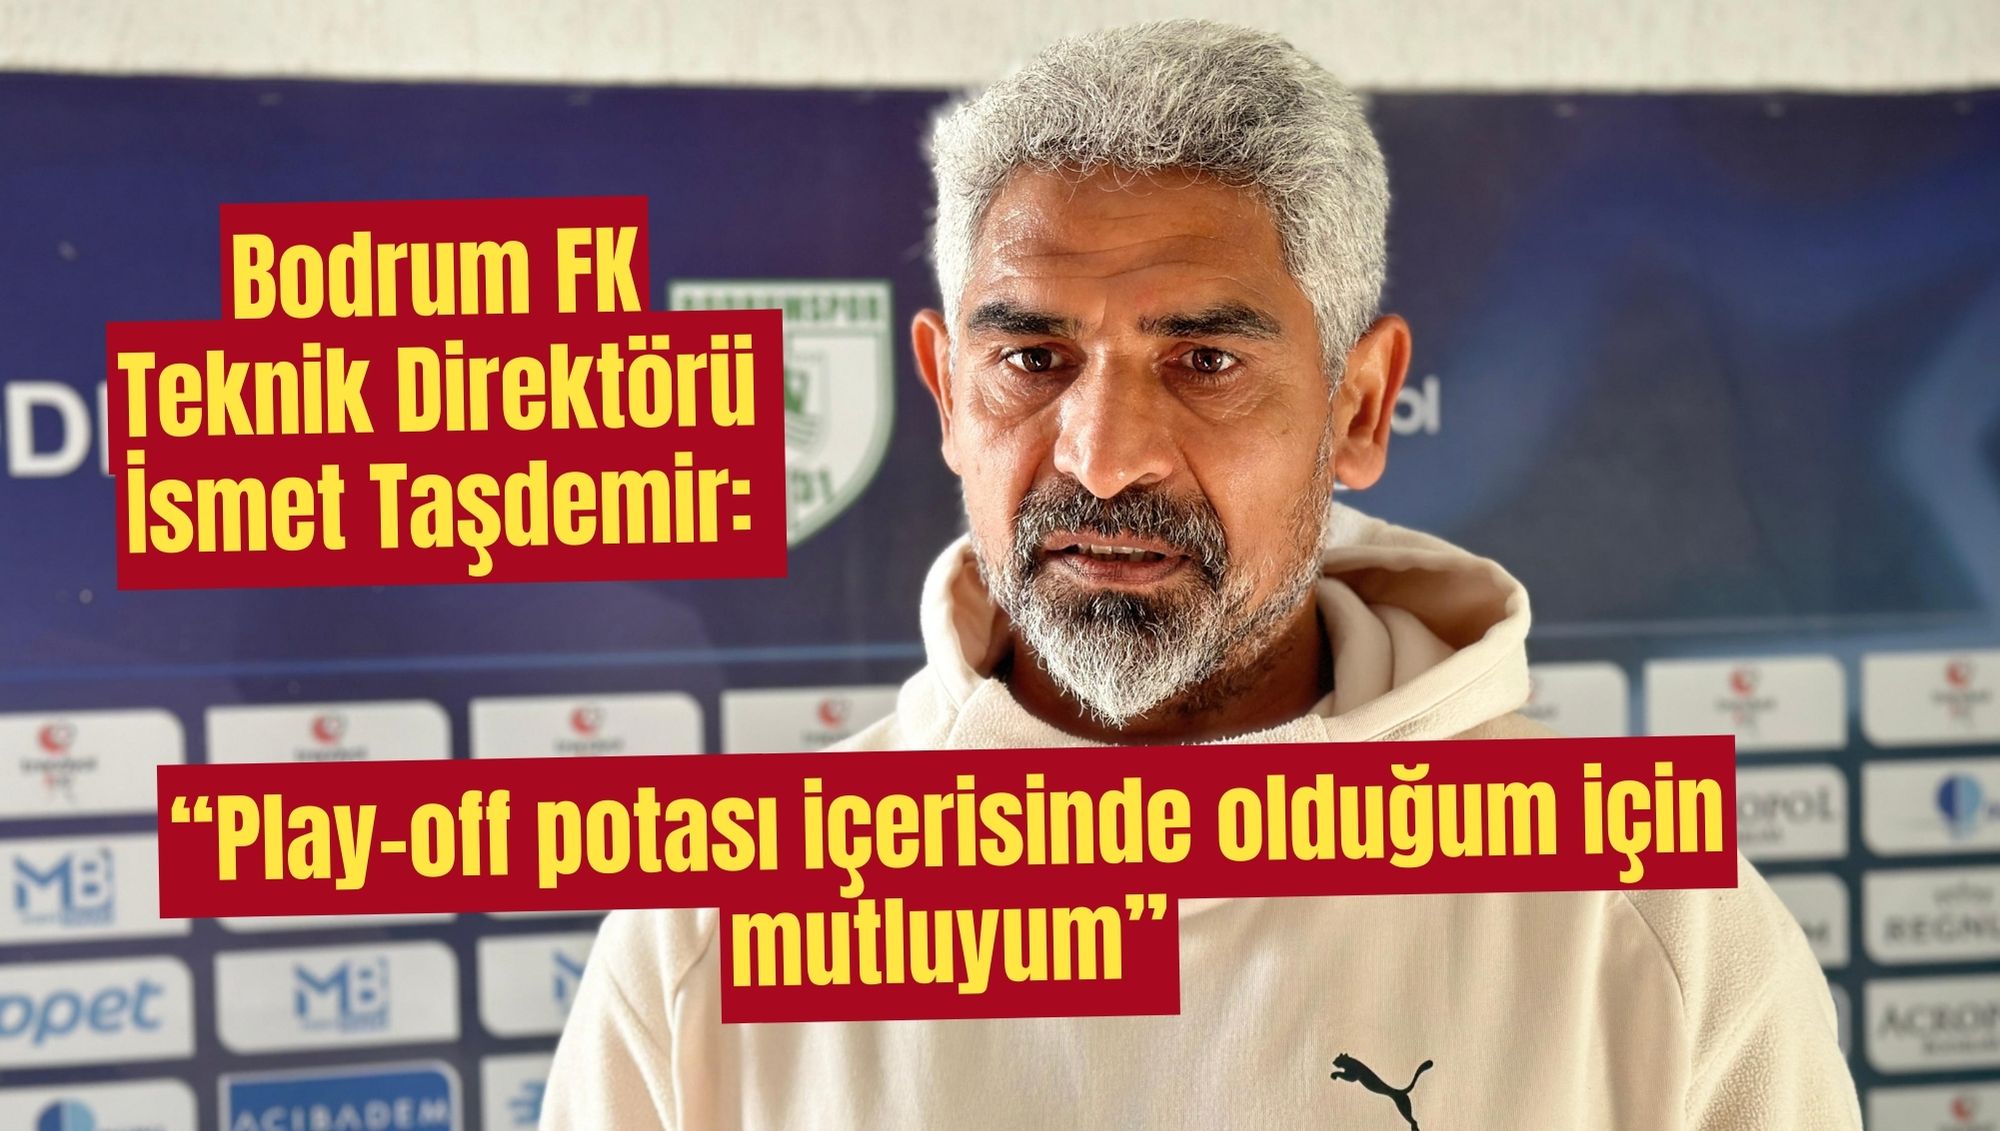 Bodrum FK Teknik Direktörü İsmet Taşdemir: “Play-off potası içerisinde olduğum için mutluyum”